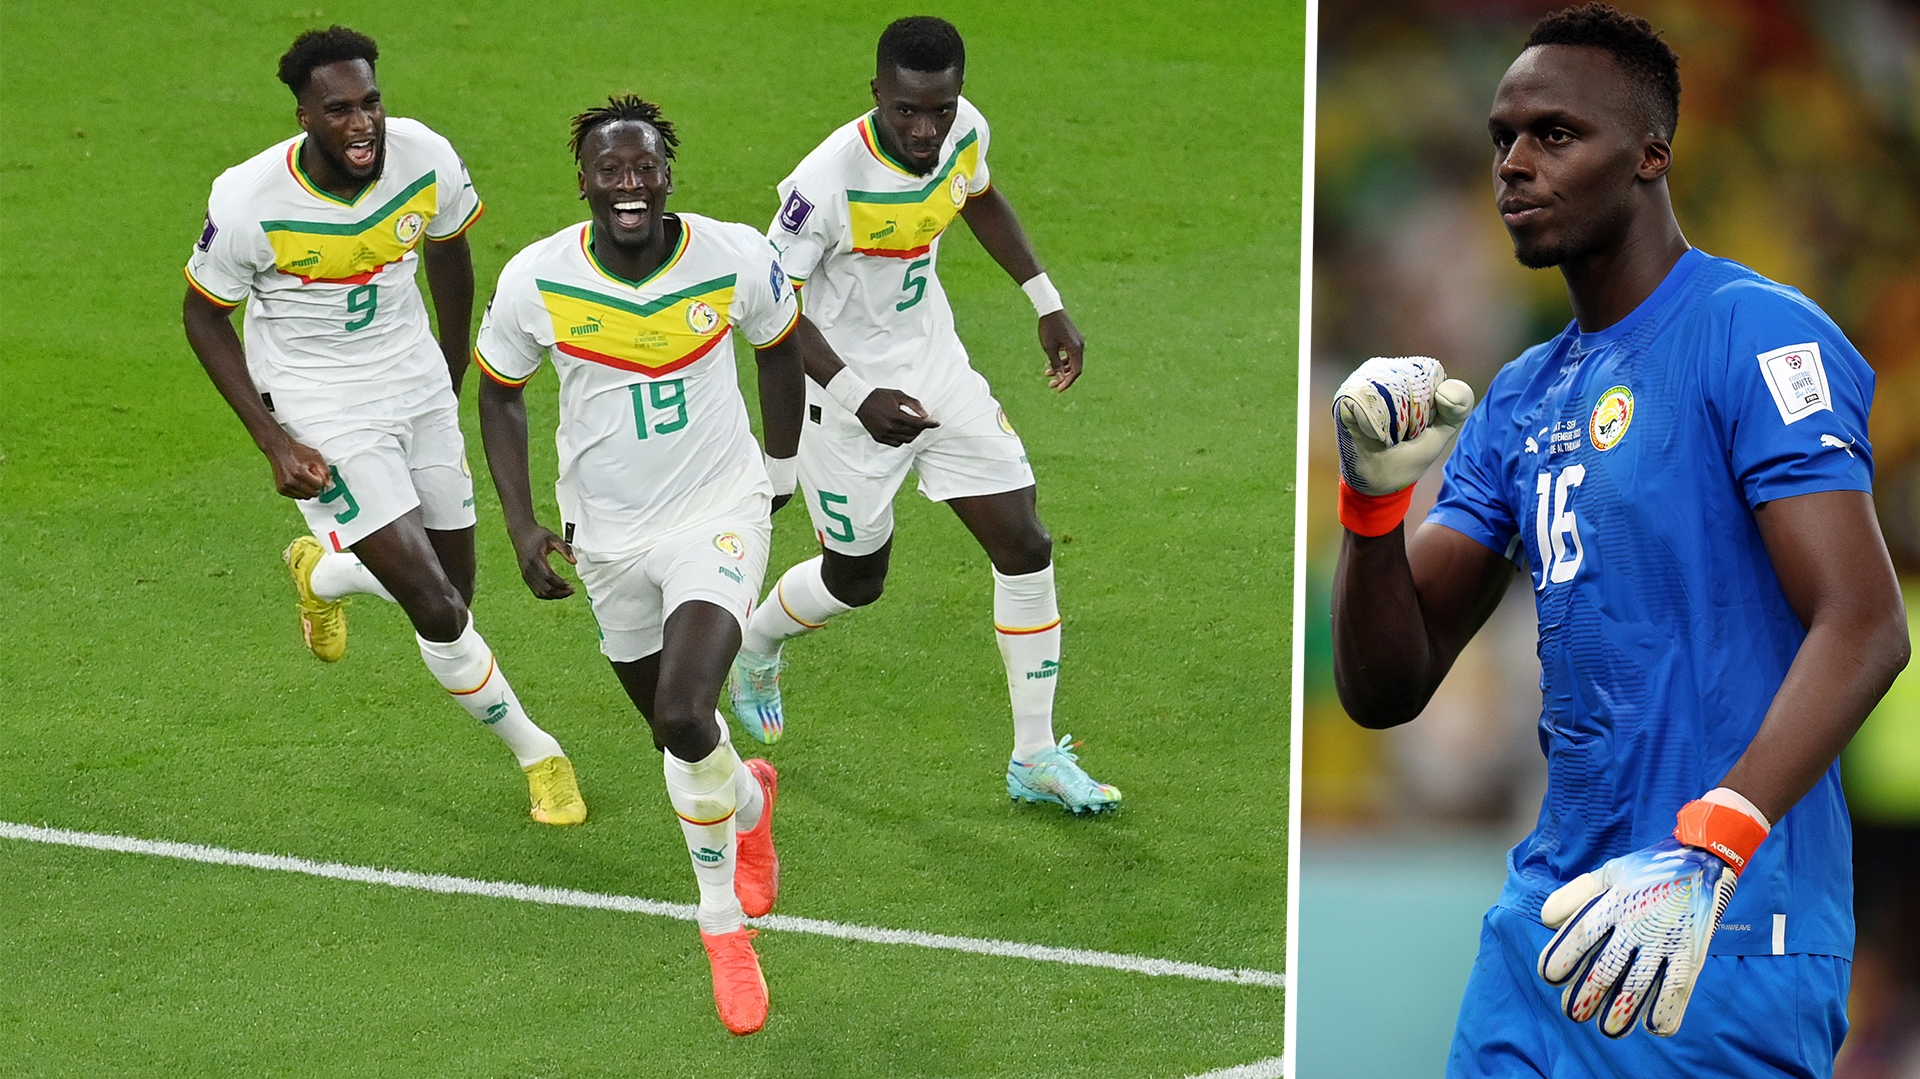 Nhận định bóng đá Ecuador - Senegal (VTV3 trực tiếp): Thế giới nào cho Edouard Mendy?